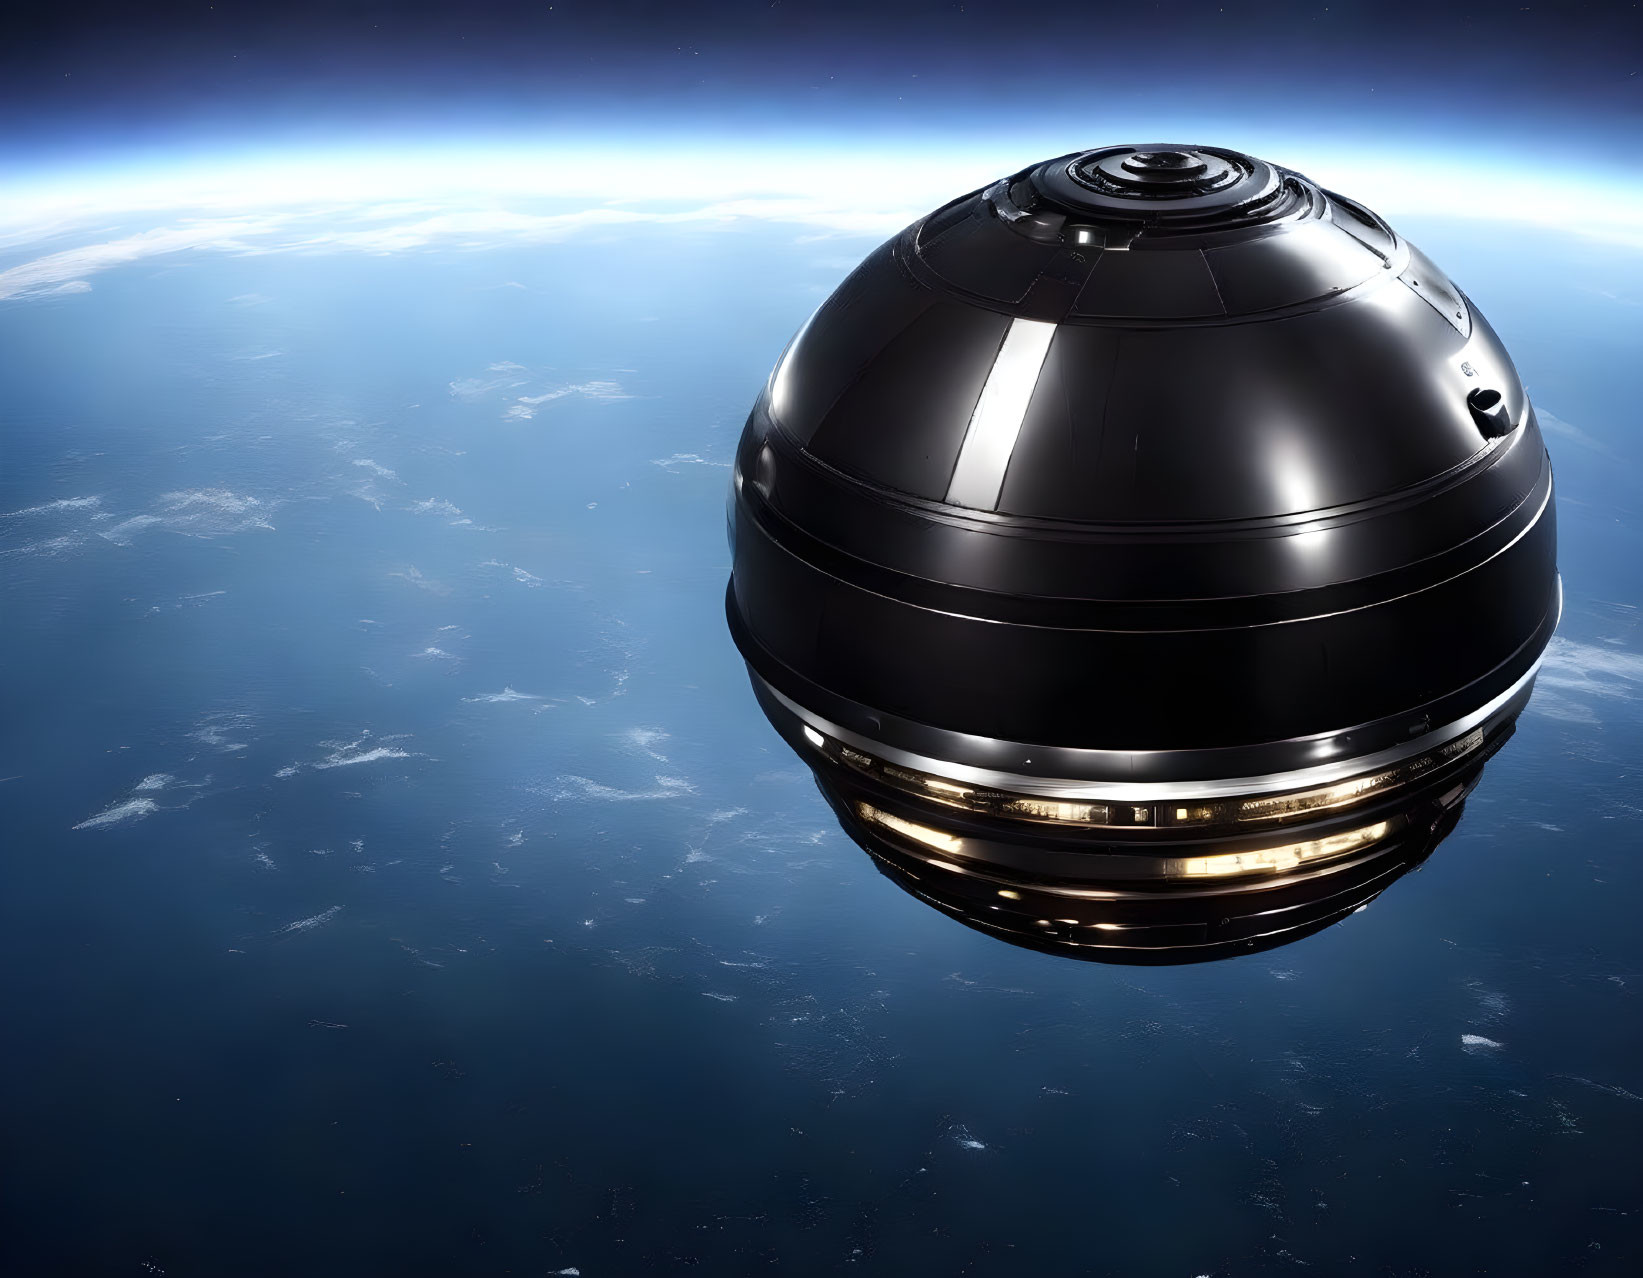 Futuristic spherical satellite with illuminated panels in space orbit.